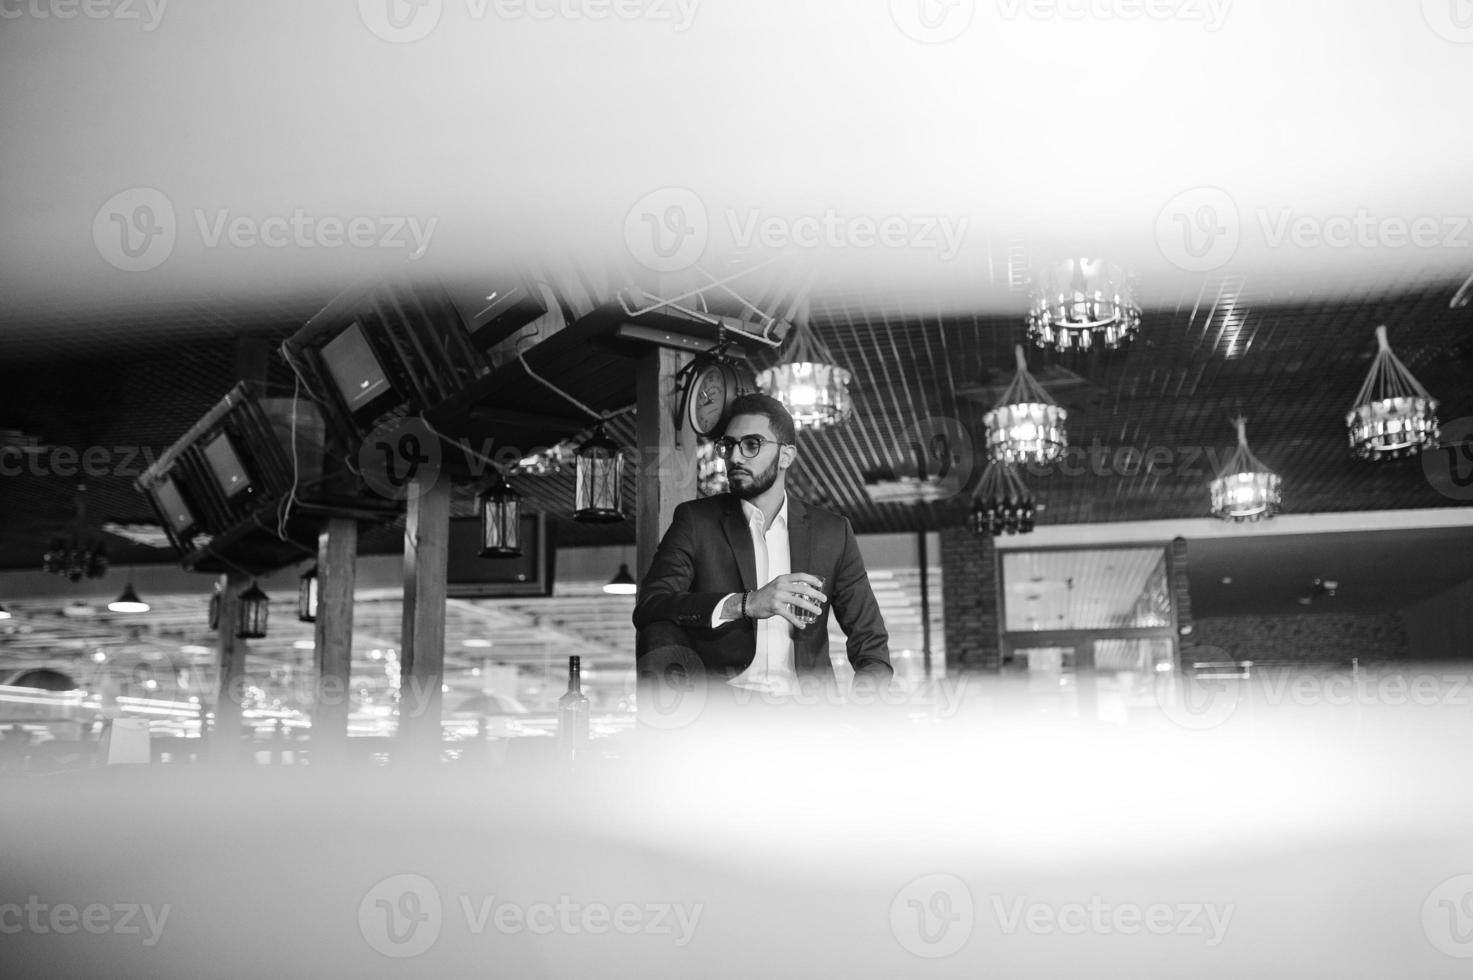 homem árabe bem vestido bonito com copo de uísque e charuto posou no pub. foto